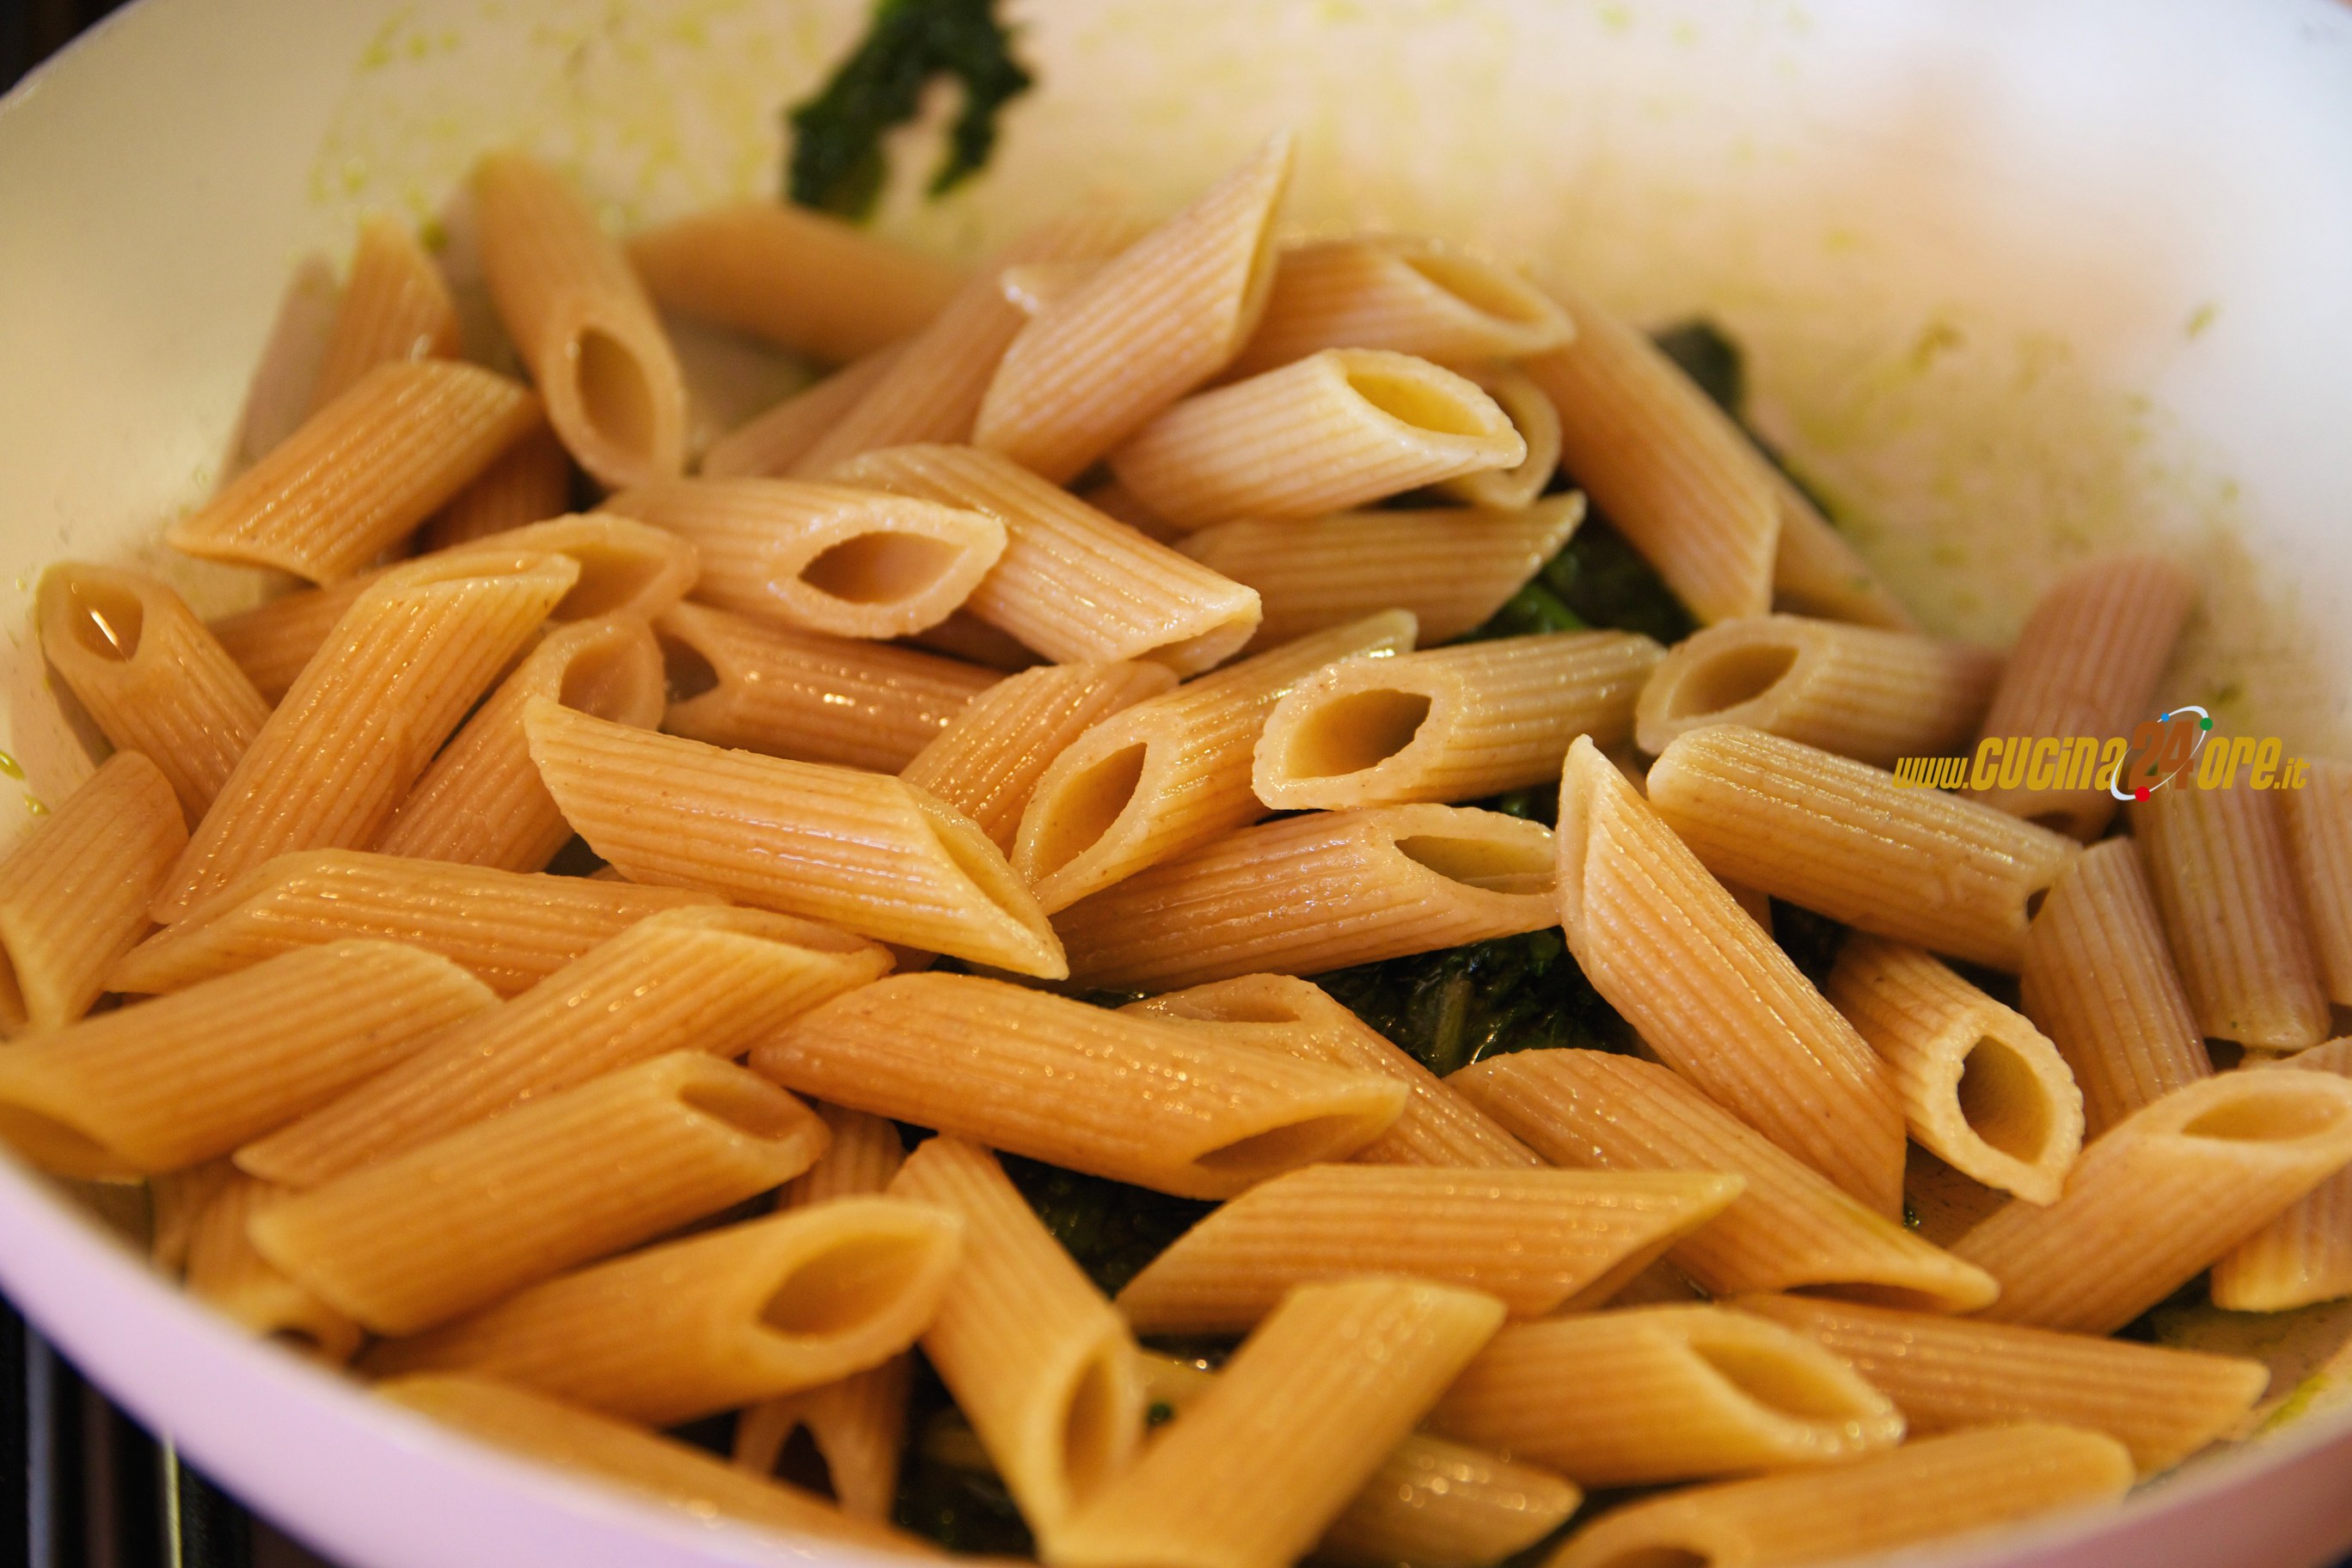 penne integrali mozzarella e spinaci SIMPLY02 - Ricette di Cucina